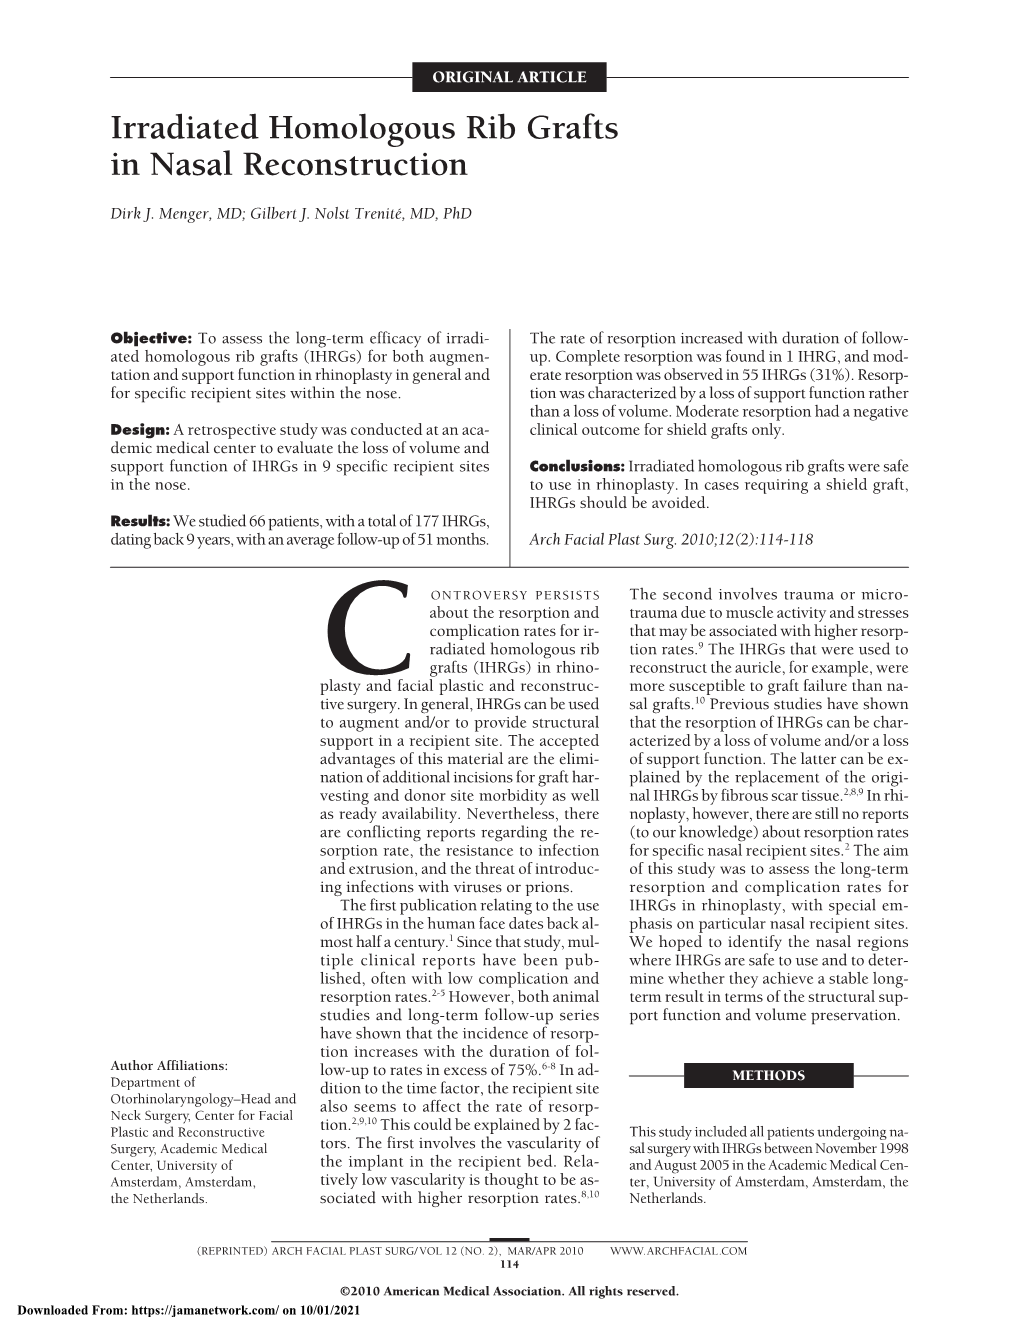 Irradiated Homologous Rib Grafts in Nasal Reconstruction